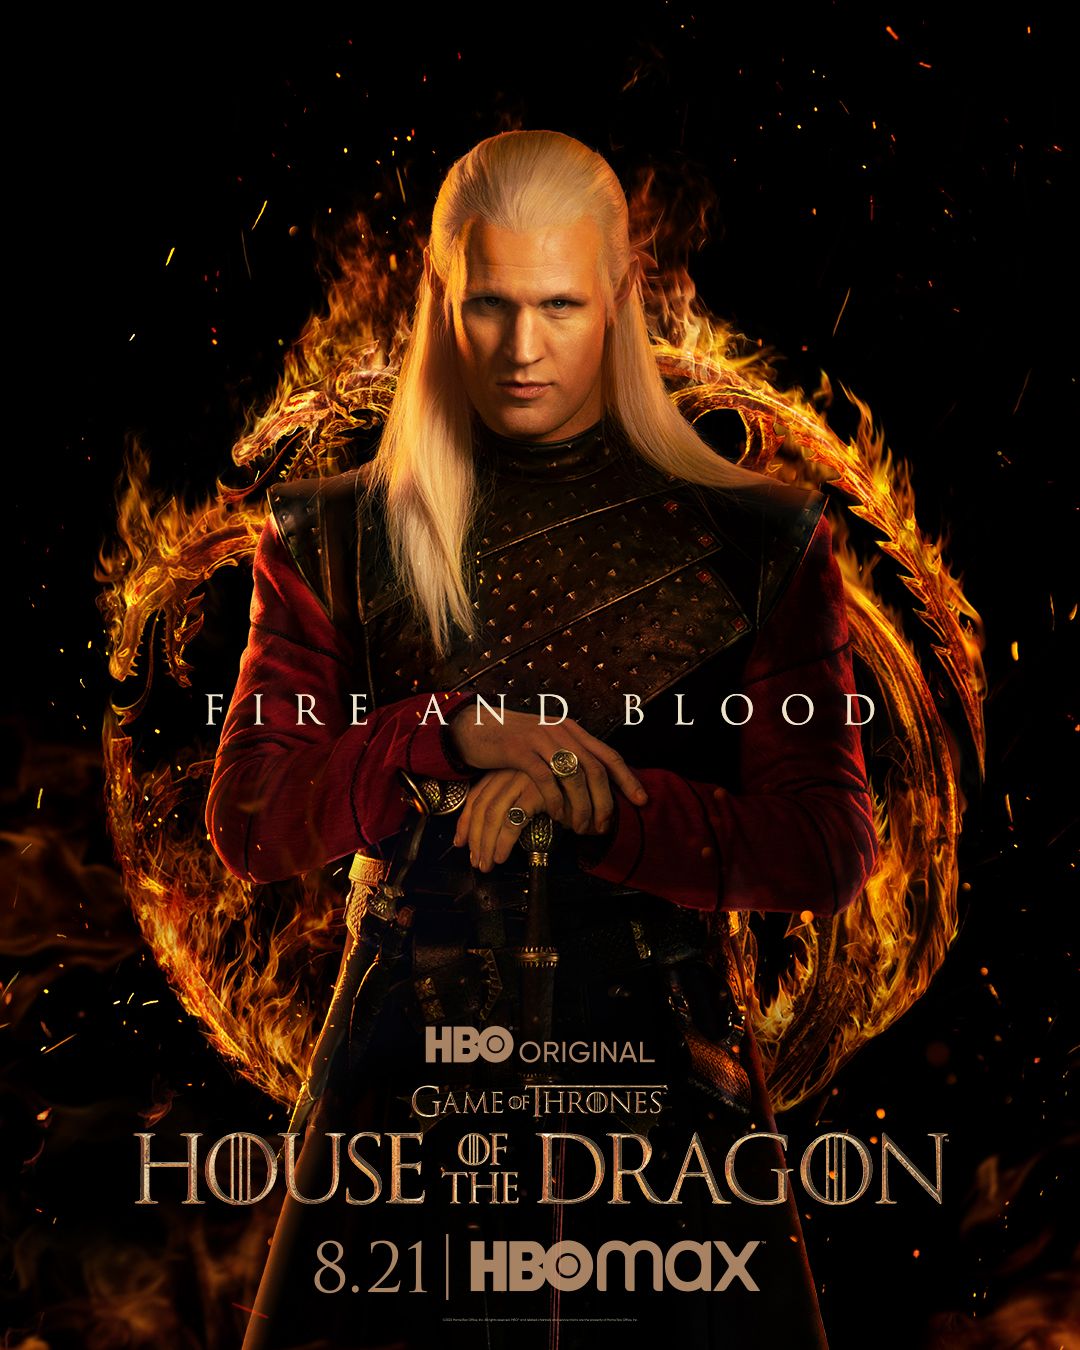 Daemon Targaryen in House of the Dragon poster